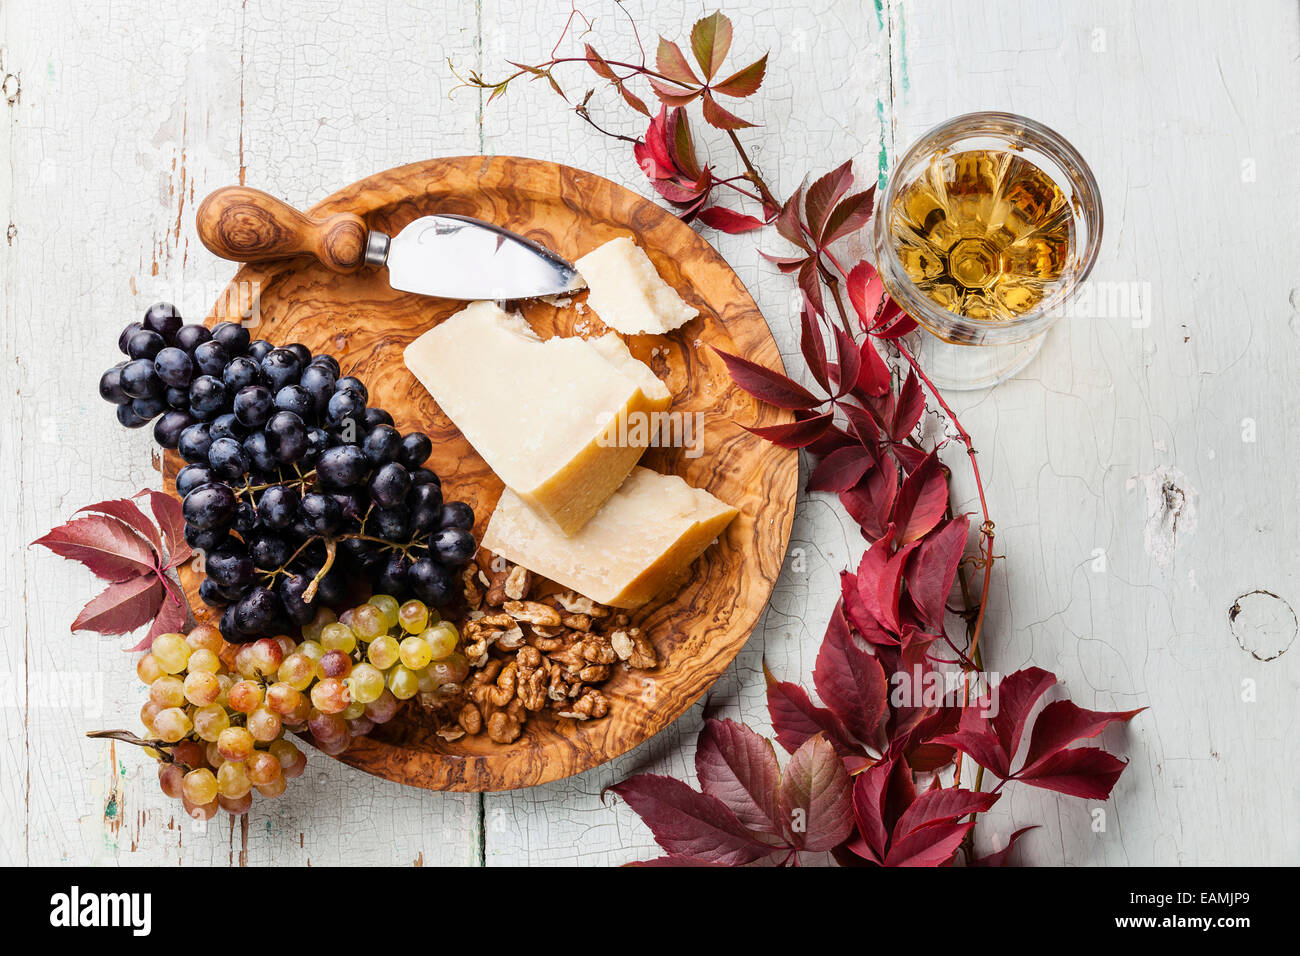 Fromage Parmesan et raisins sur plaque de bois d'olive et du vin Banque D'Images